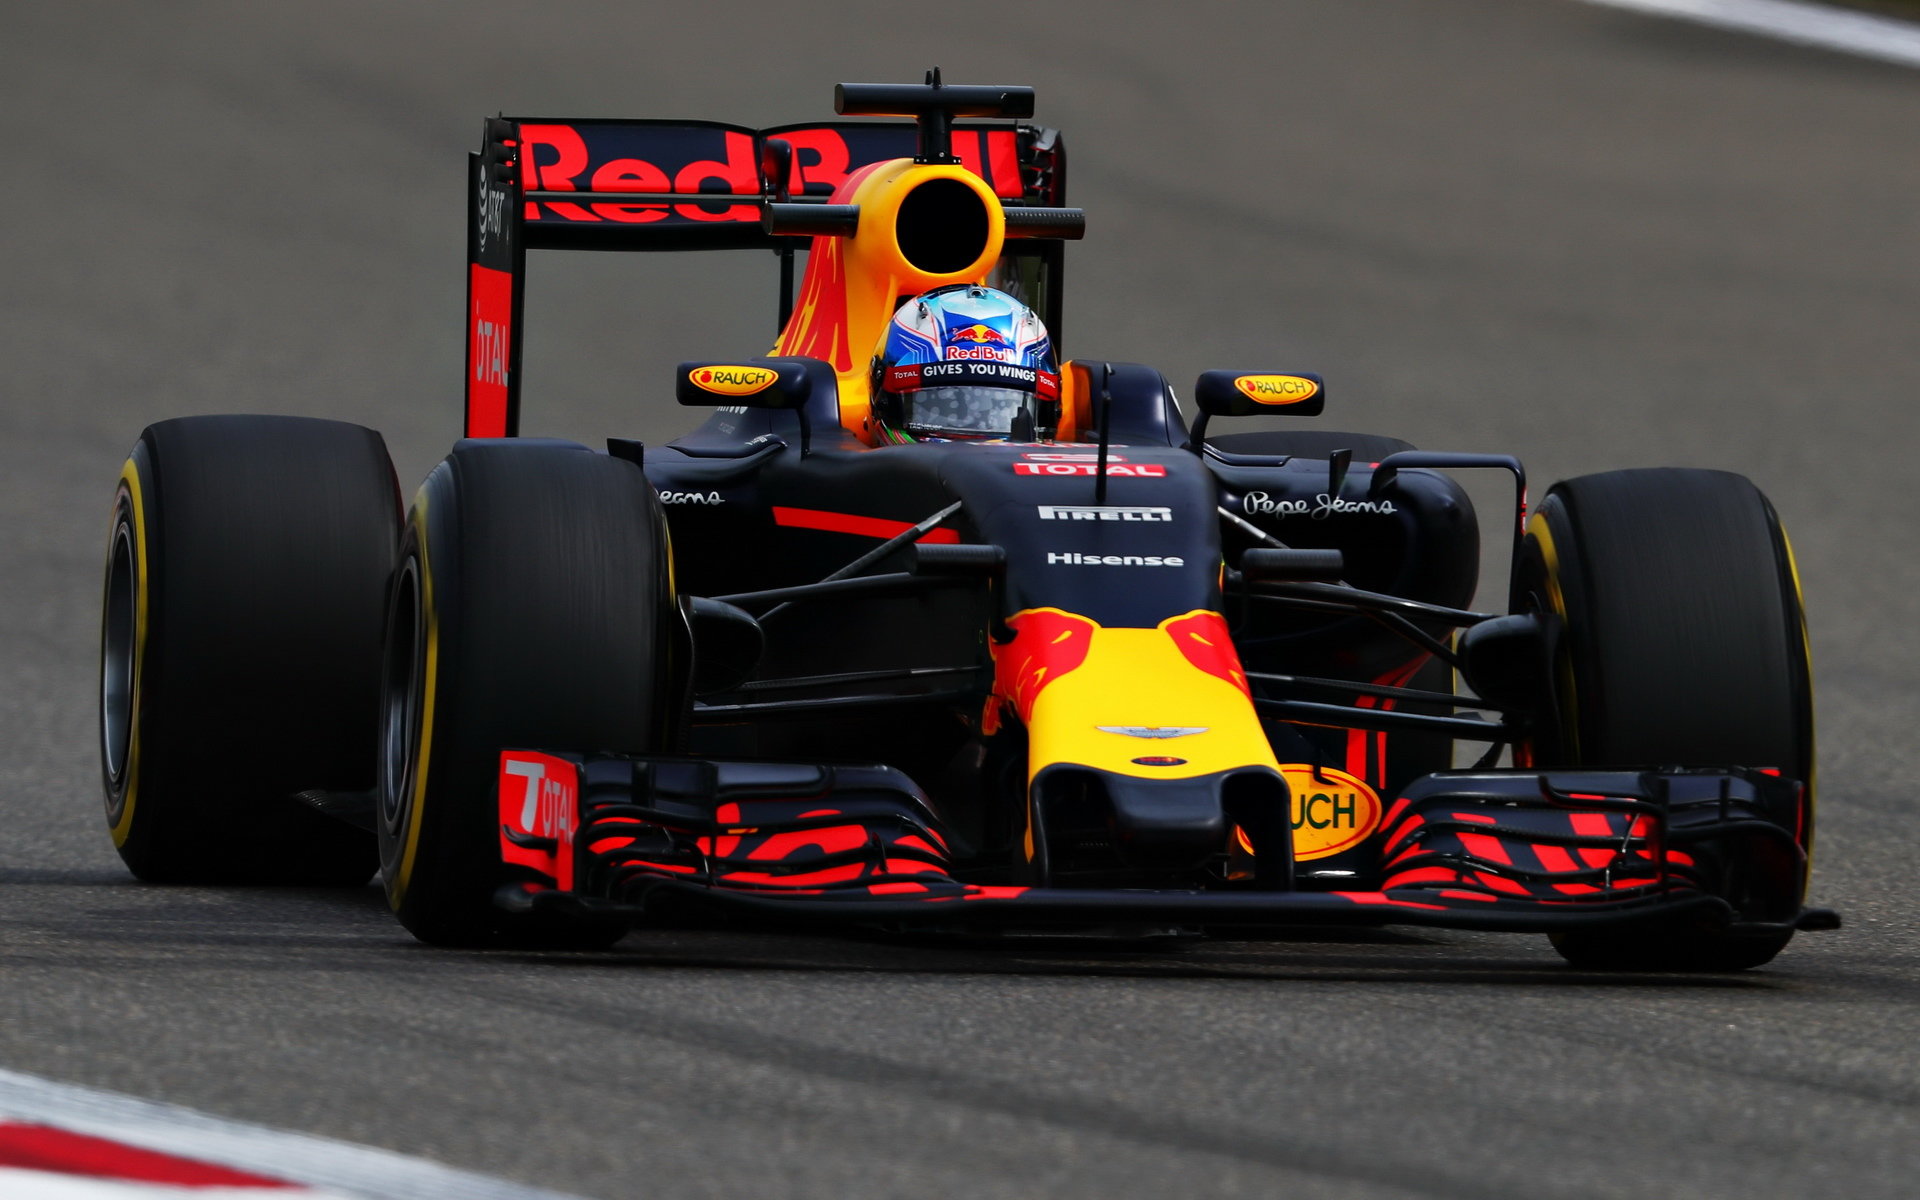 Daniel Ricciardo při pátečním tréninku v Číně